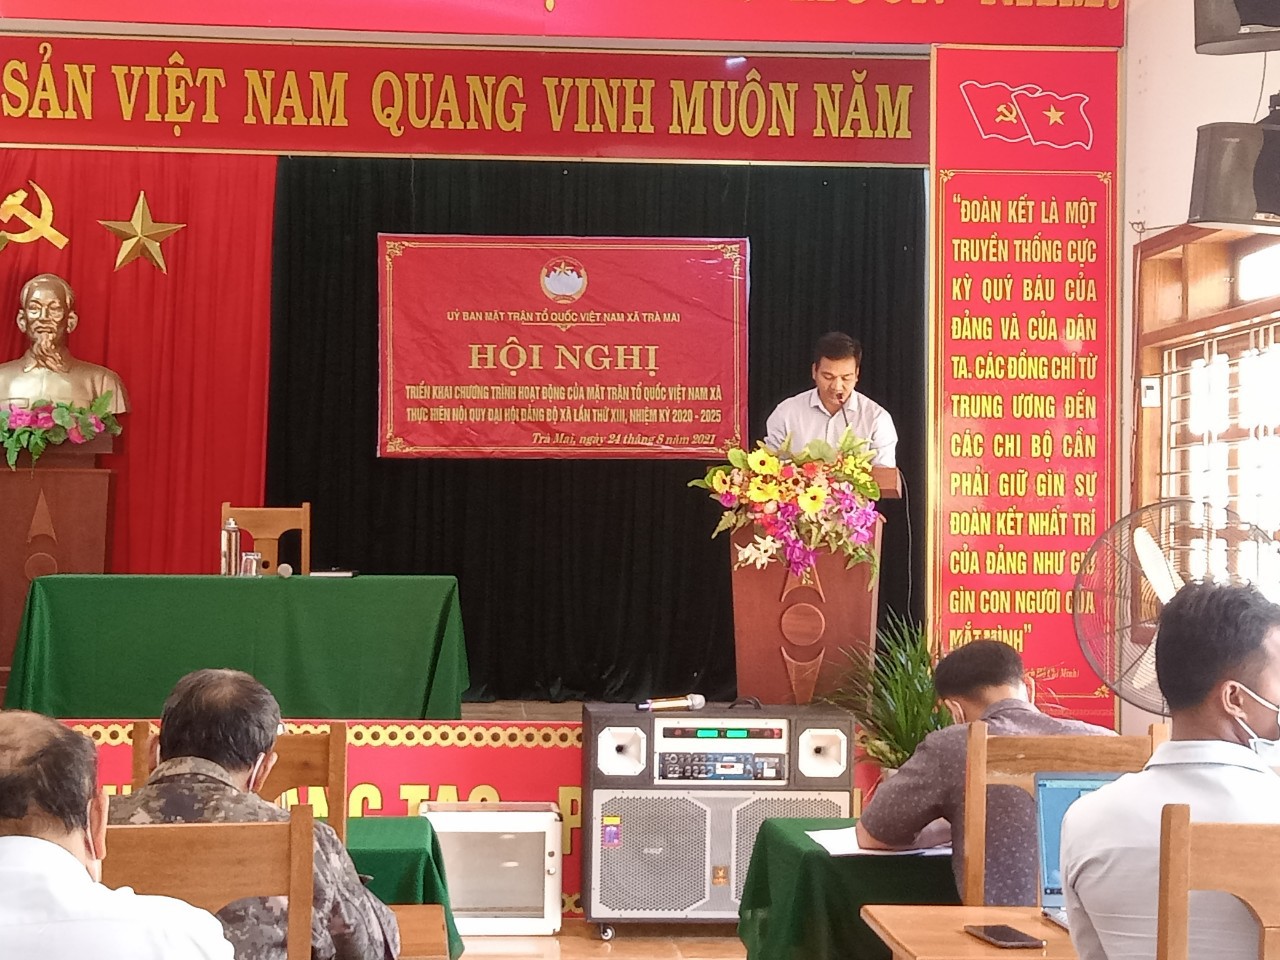 Đồng chí Nguyễn Văn Quận - Đảng ủy viên, Chủ tich UBMTTQVN xã phát biểu khai mạc hội nghị